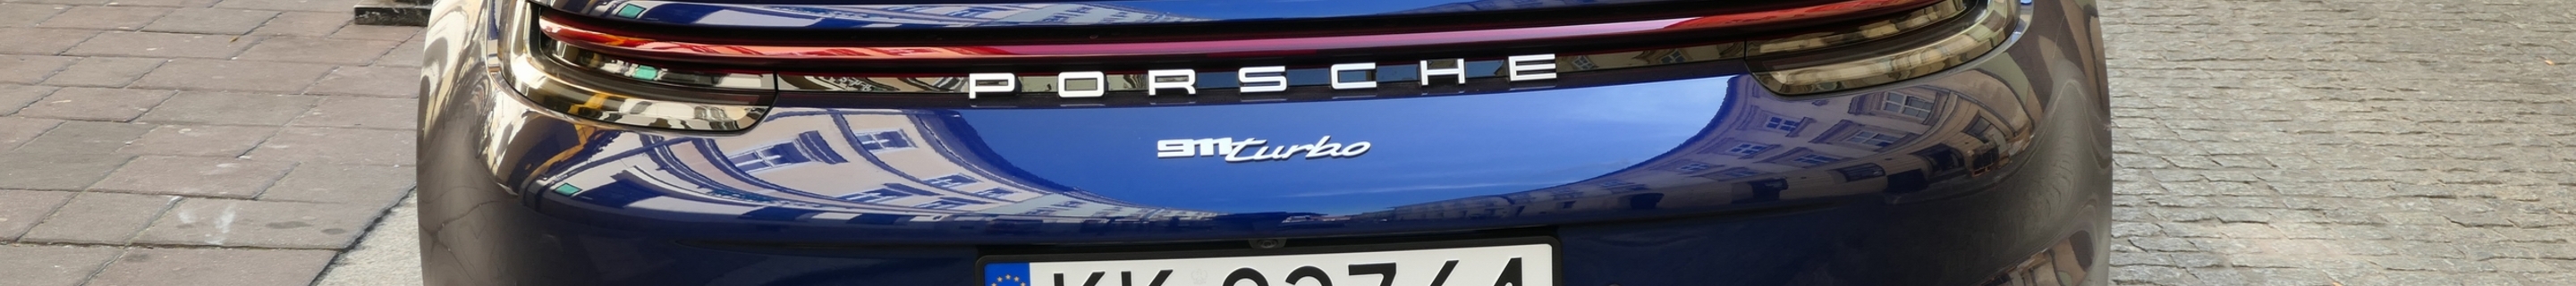 Porsche 992 Turbo Cabriolet